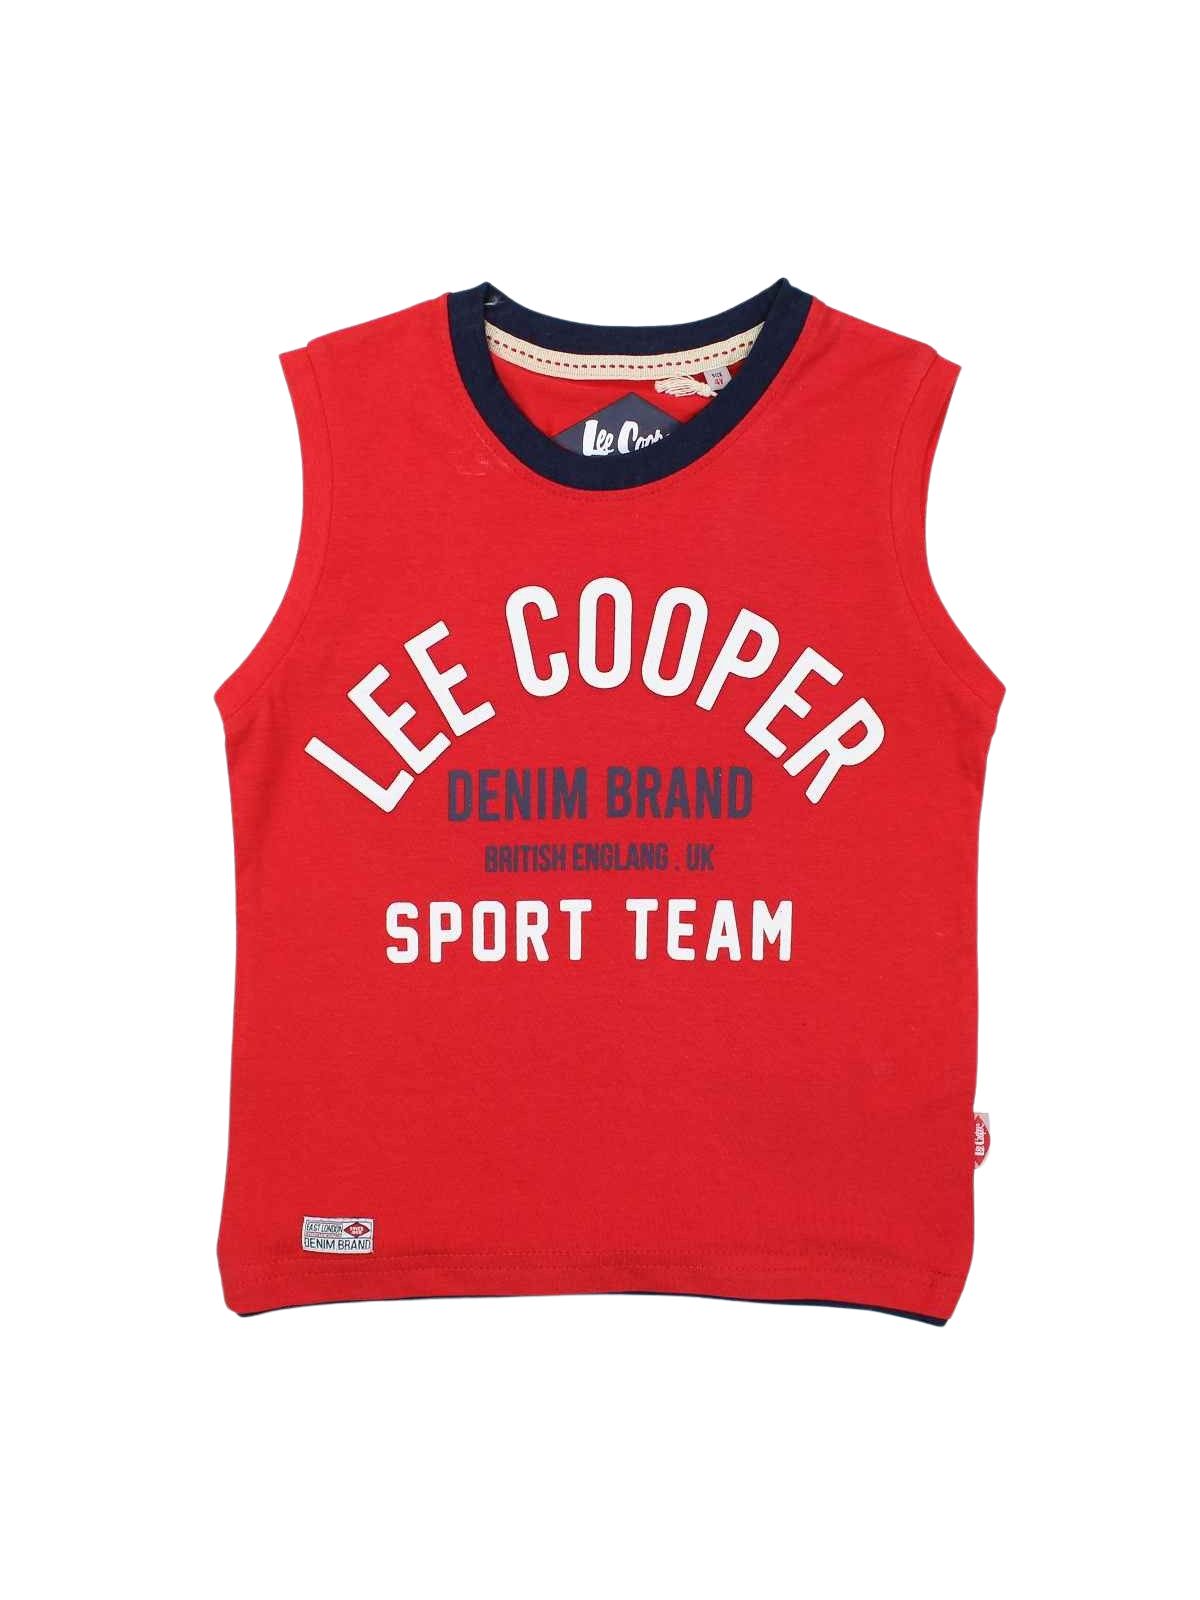 Lee Cooper Kleidung von 2 Stück mit Aufhänger